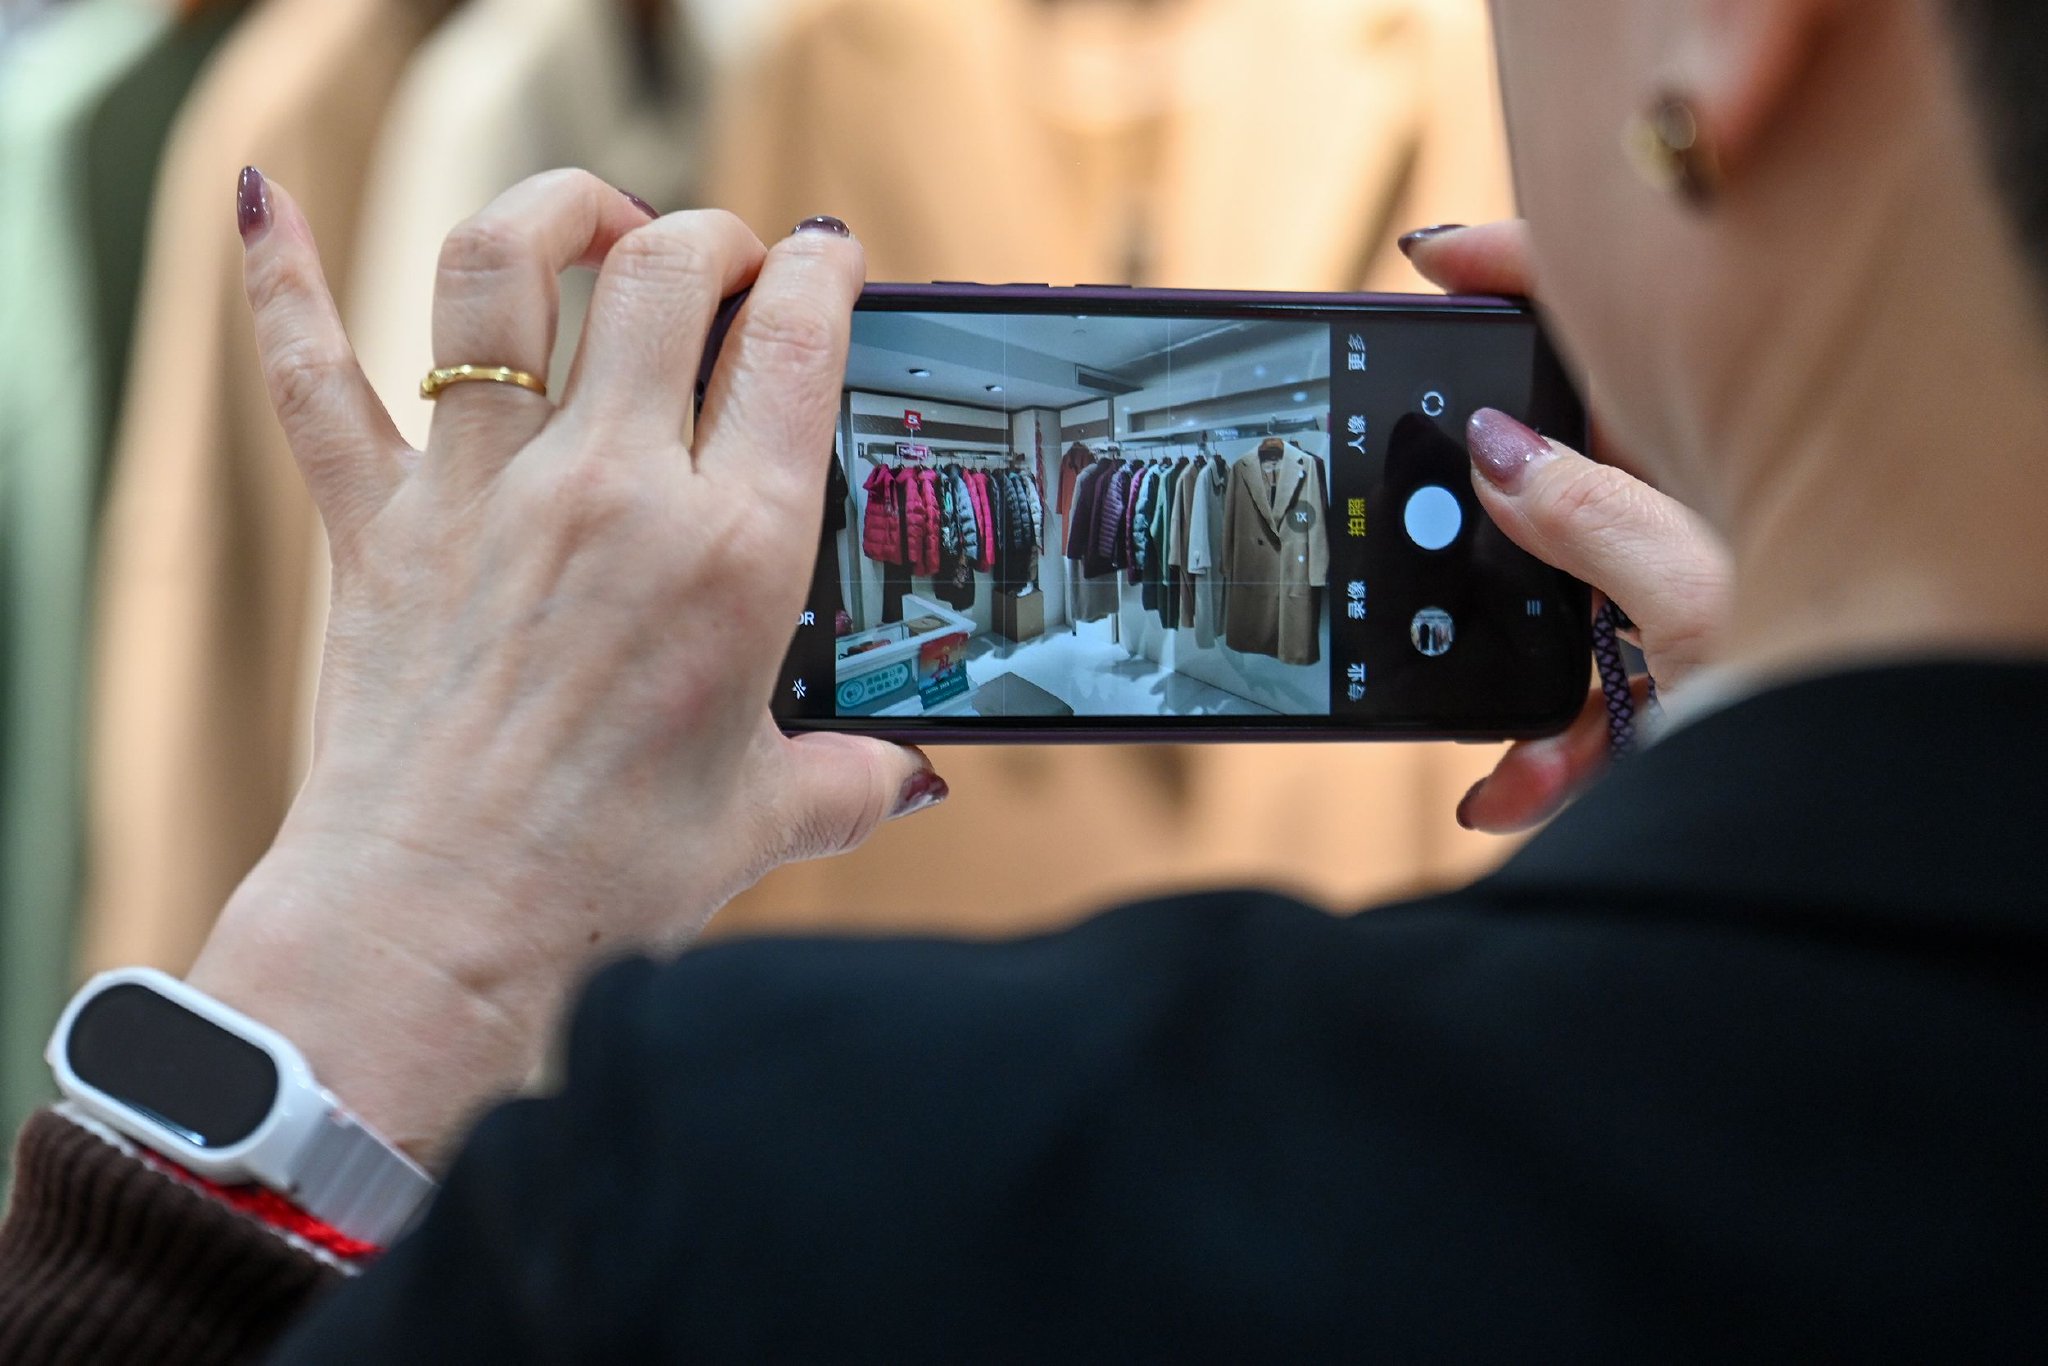 吴菊珍用手机拍摄自己工作的服装店内场景。